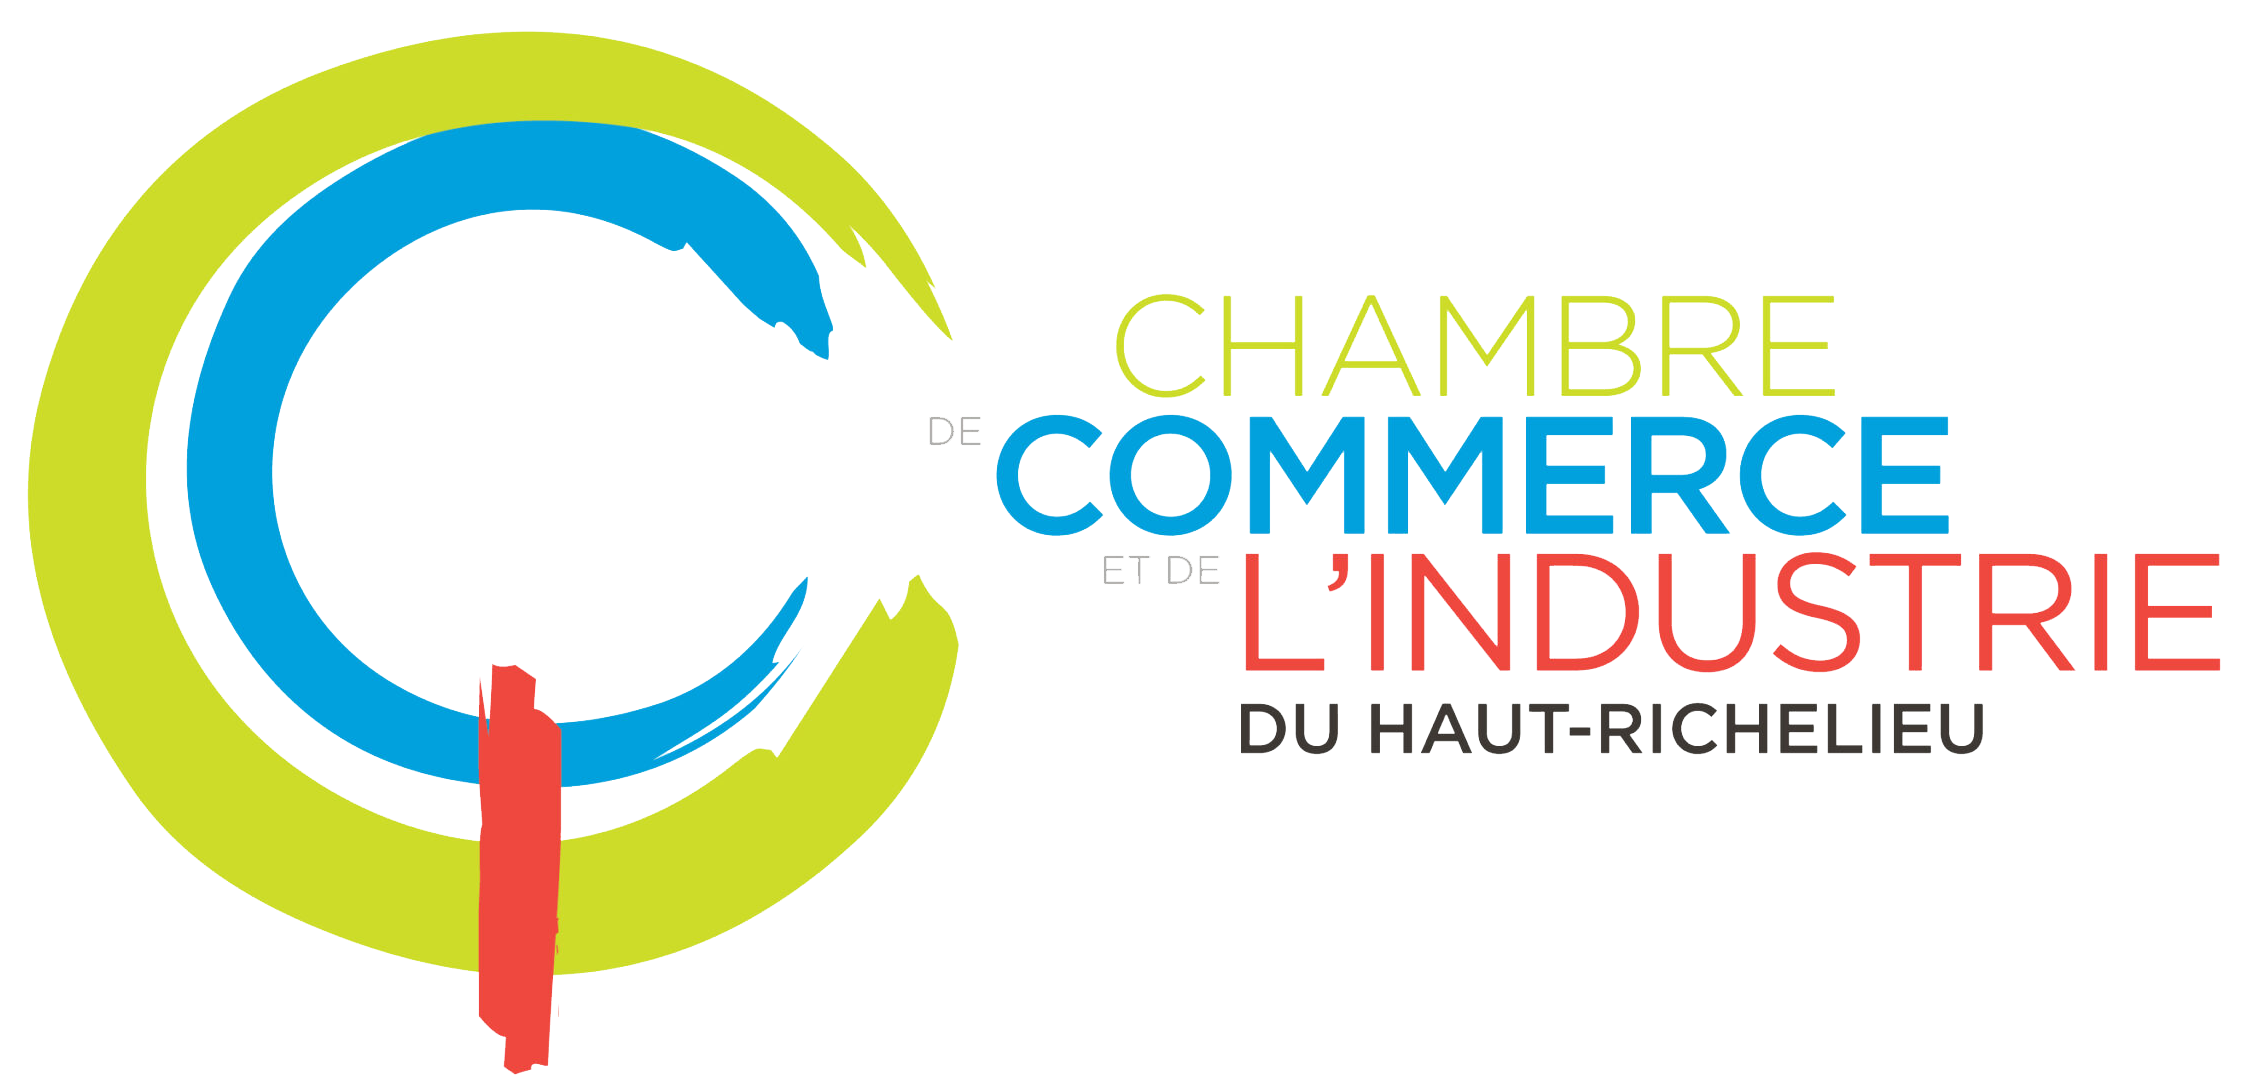 Chambre de commerce et de l'industrie du Haut Richelieu logo